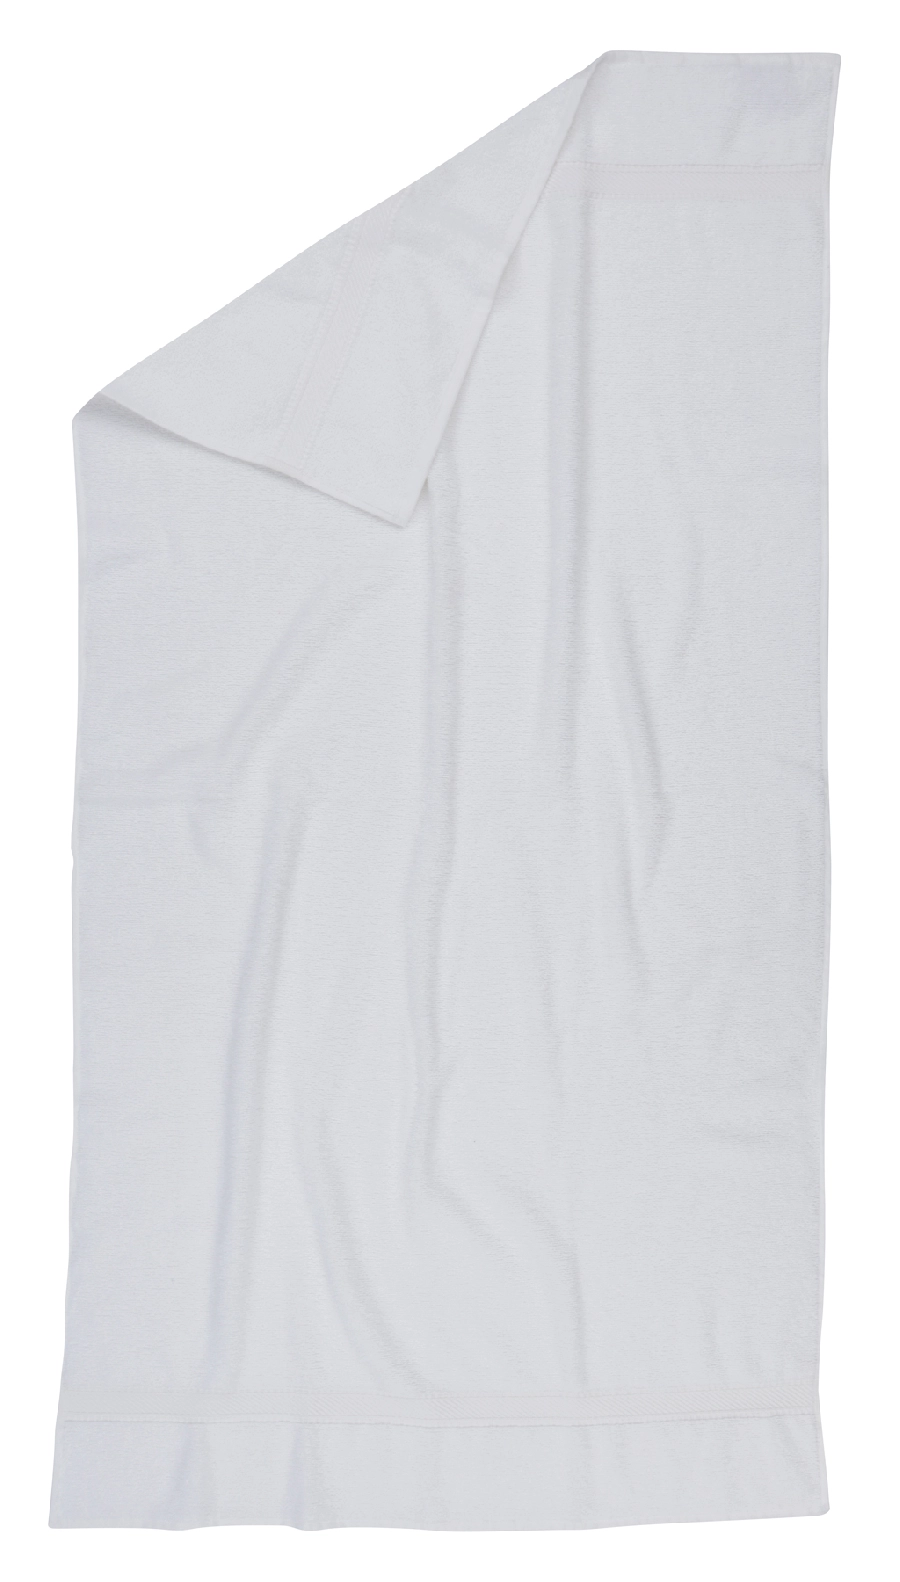 Ręcznik ECO DRY, biały 56-0605120